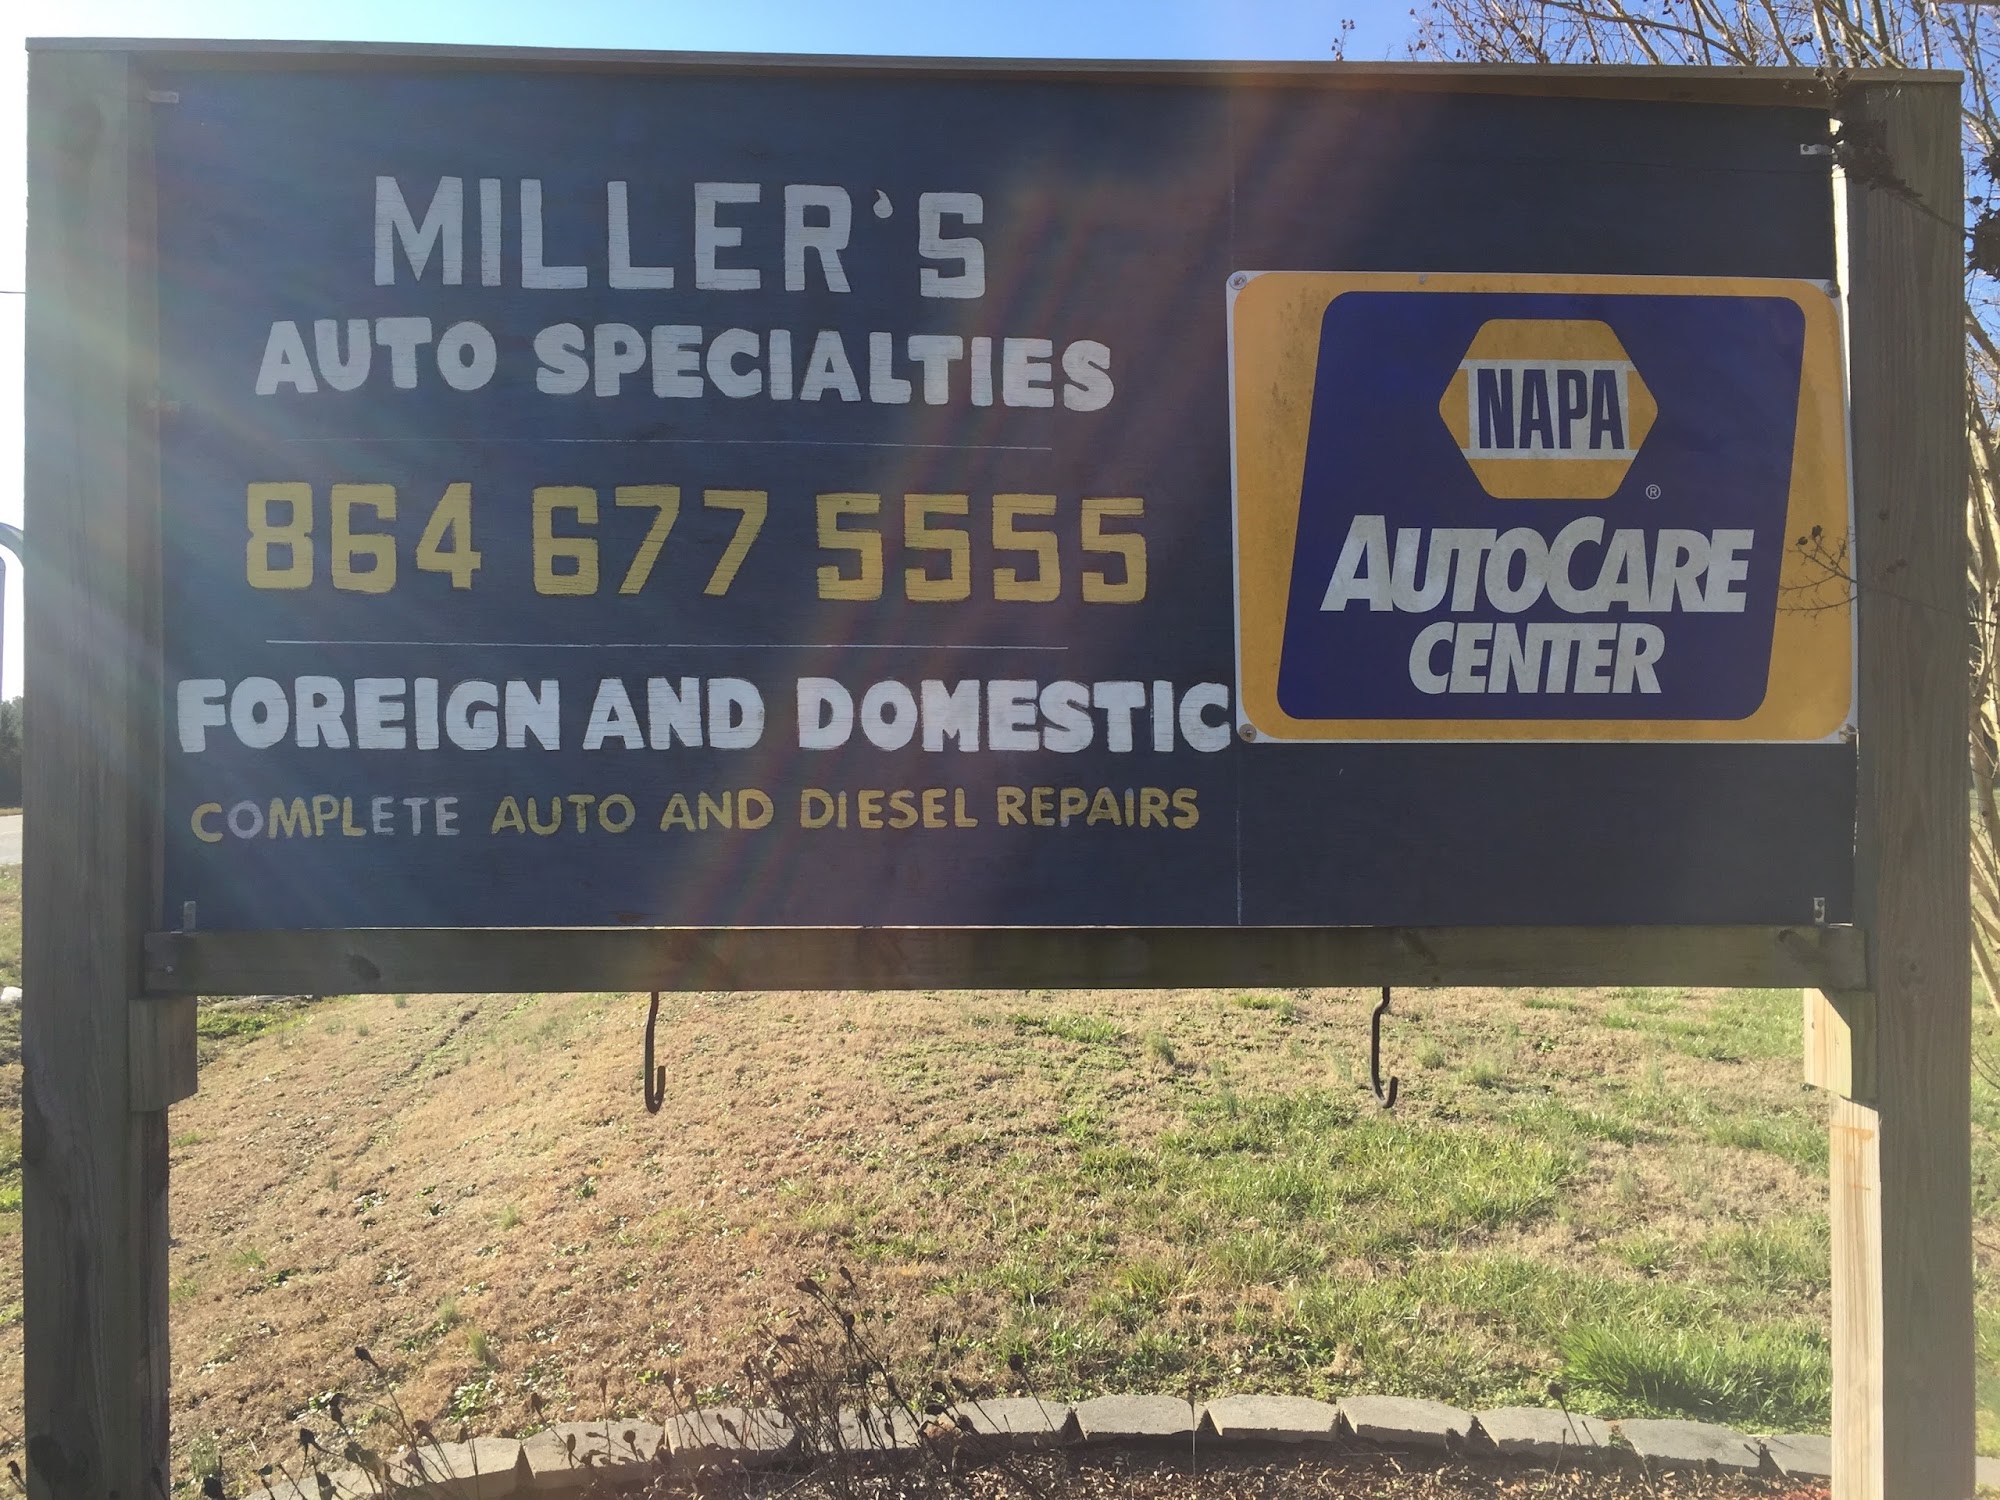 Miller's Auto Specialties